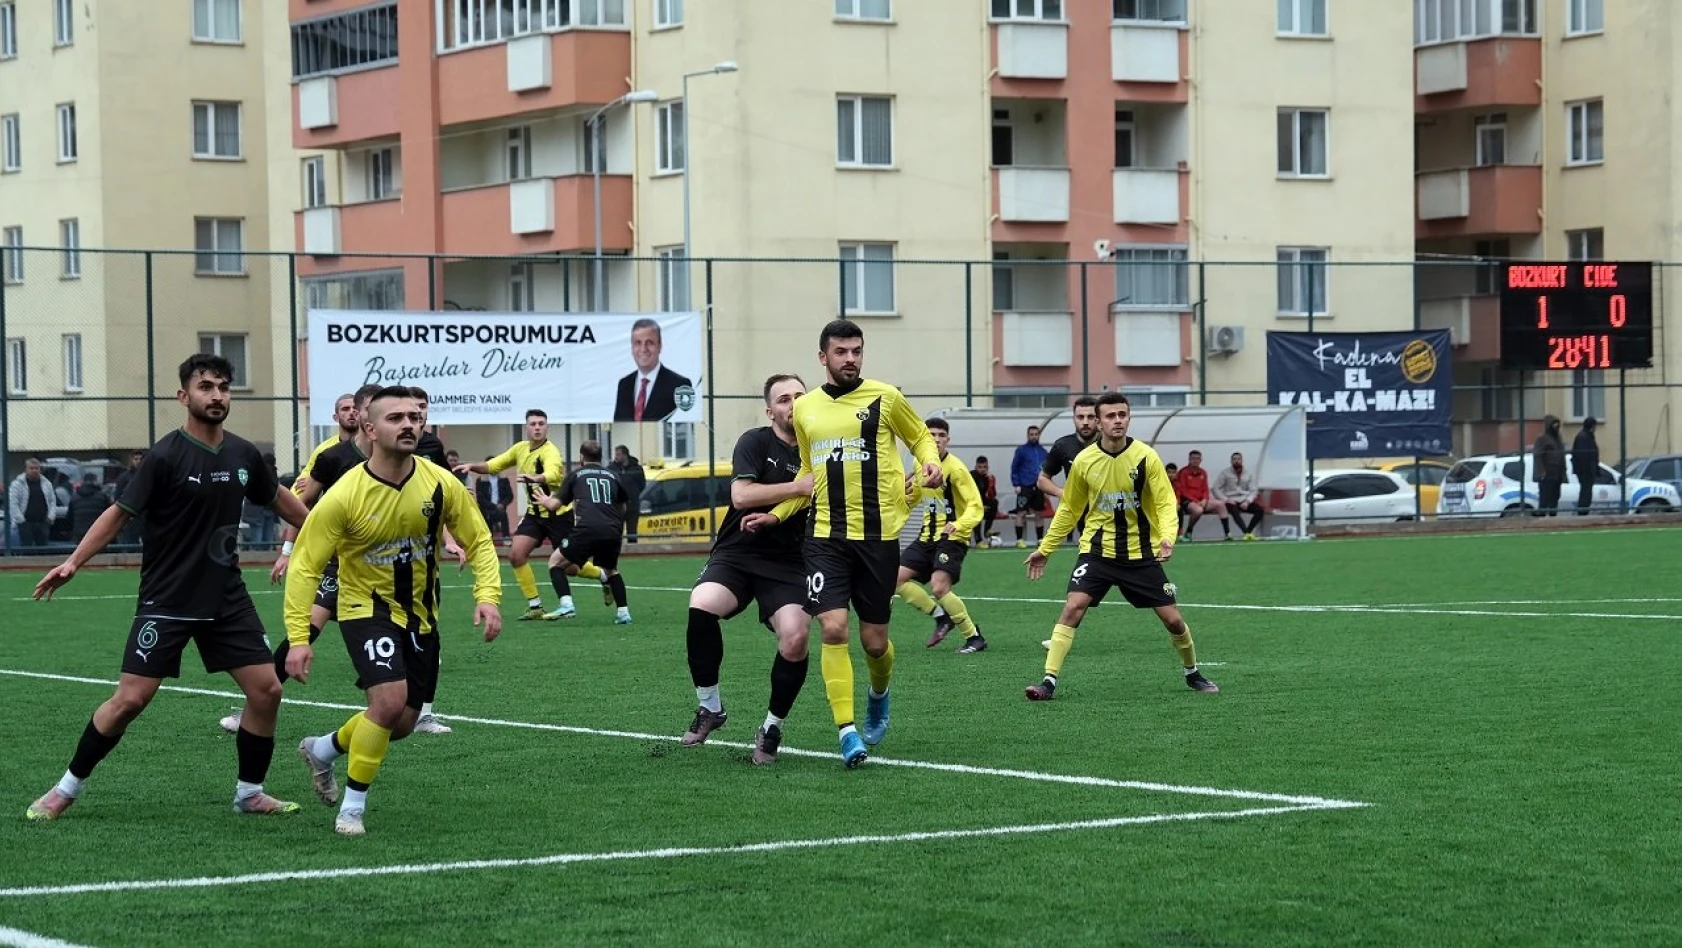 Sel sonrası Bozkurt'ta ilk resmi futbol müsabakası